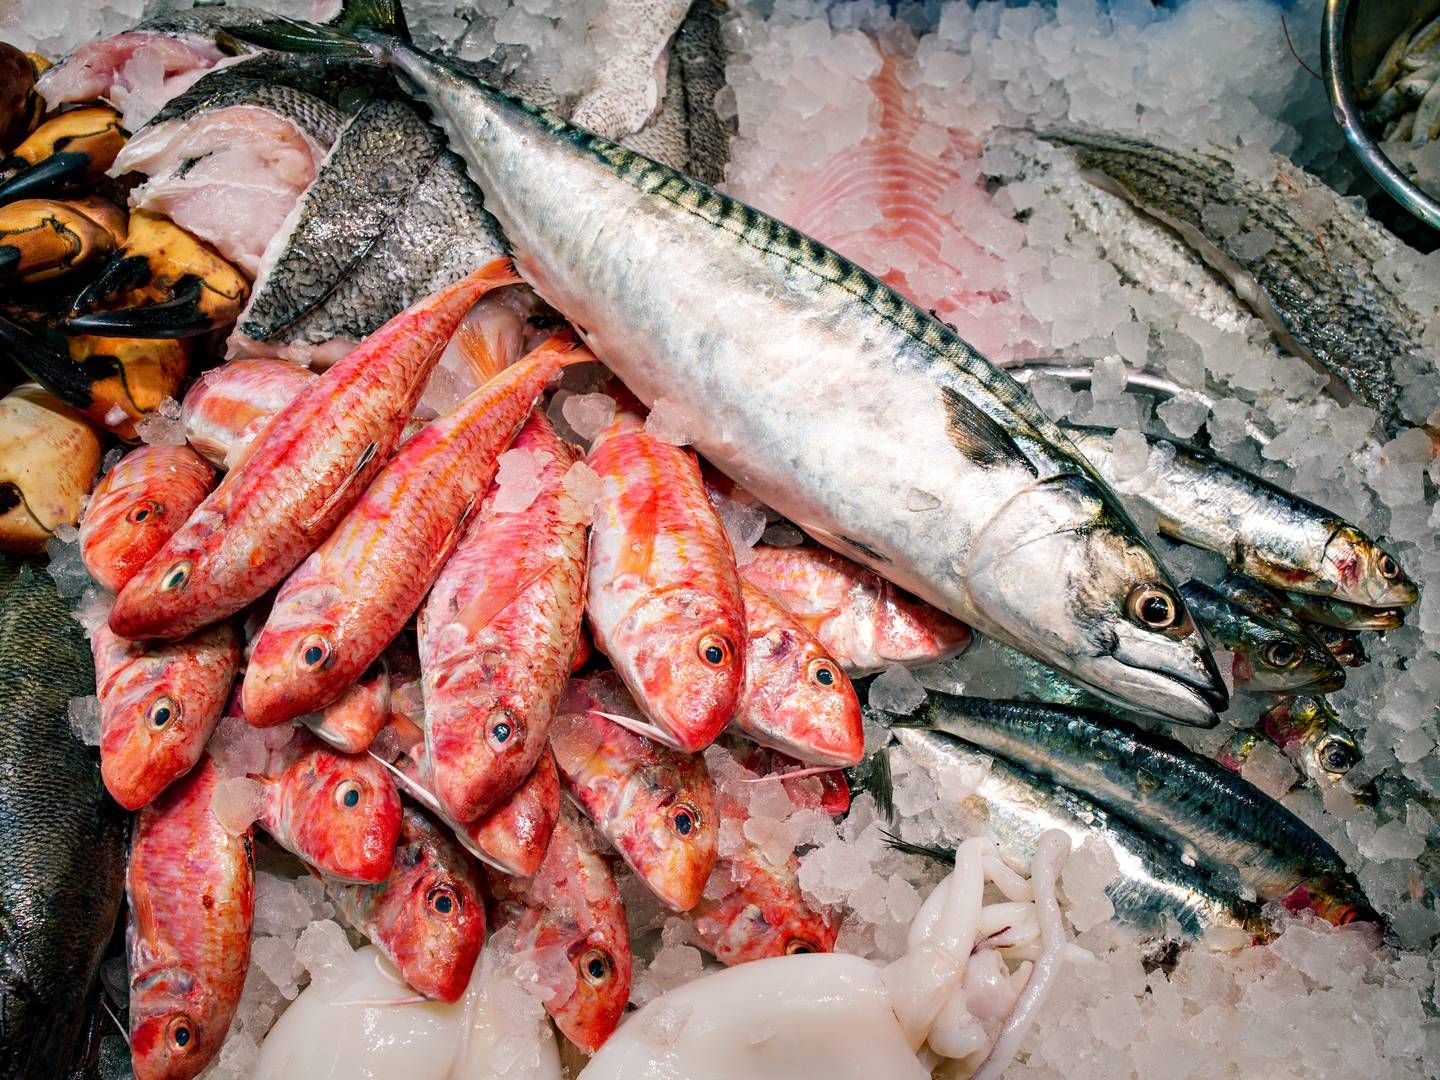 Kangamiut Seafood handler med fisk og skaldyr og er en del af den store, danske fiskekoncern Kangamiut Group. | Foto: Miriam Dalsgaard/Ritzau Scanpix.